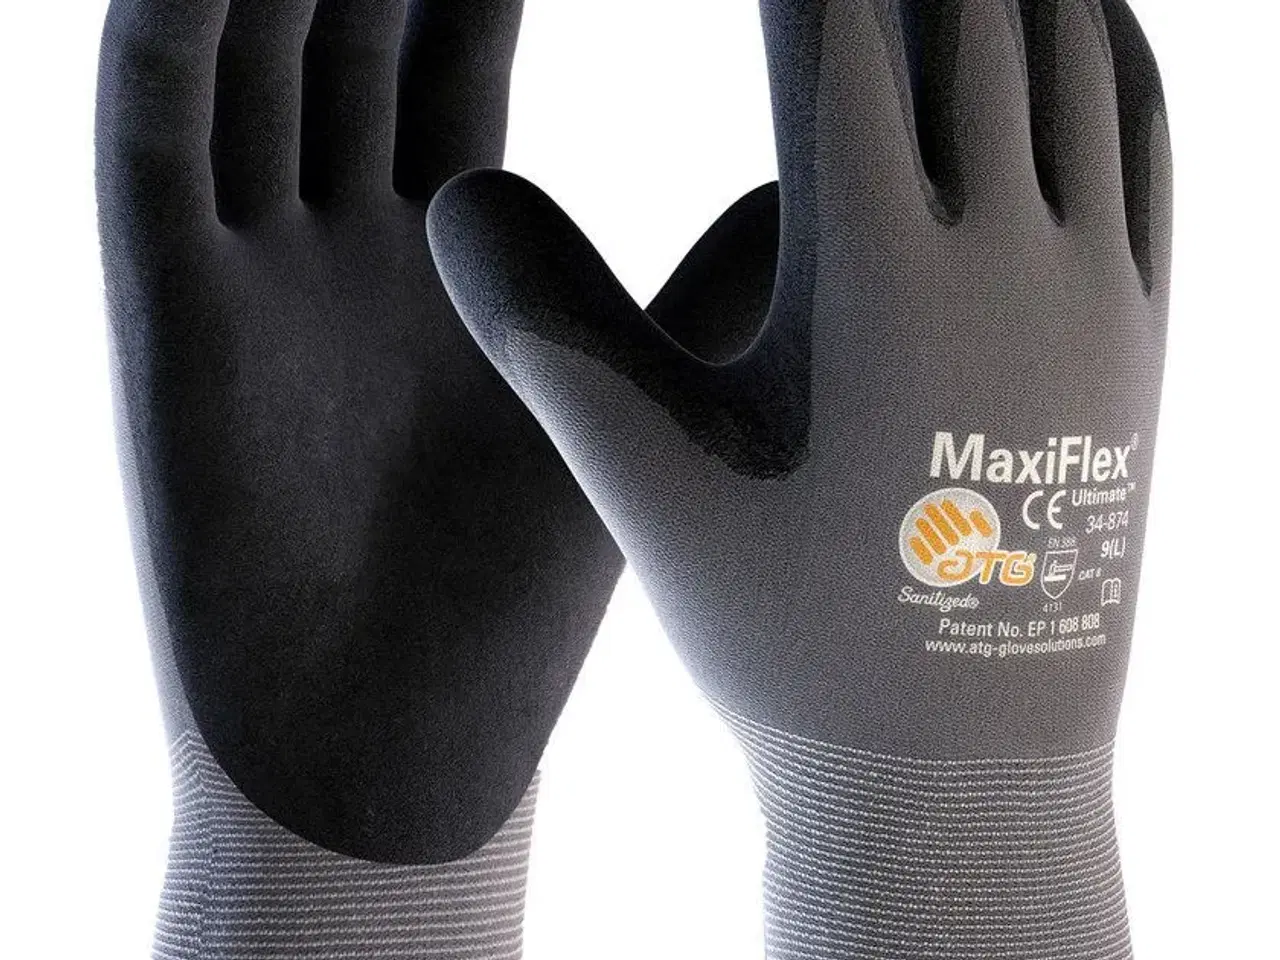 Billede 1 - MaxiFlex Ultimate 34-874 arbejdshandsker, Grå/Sort